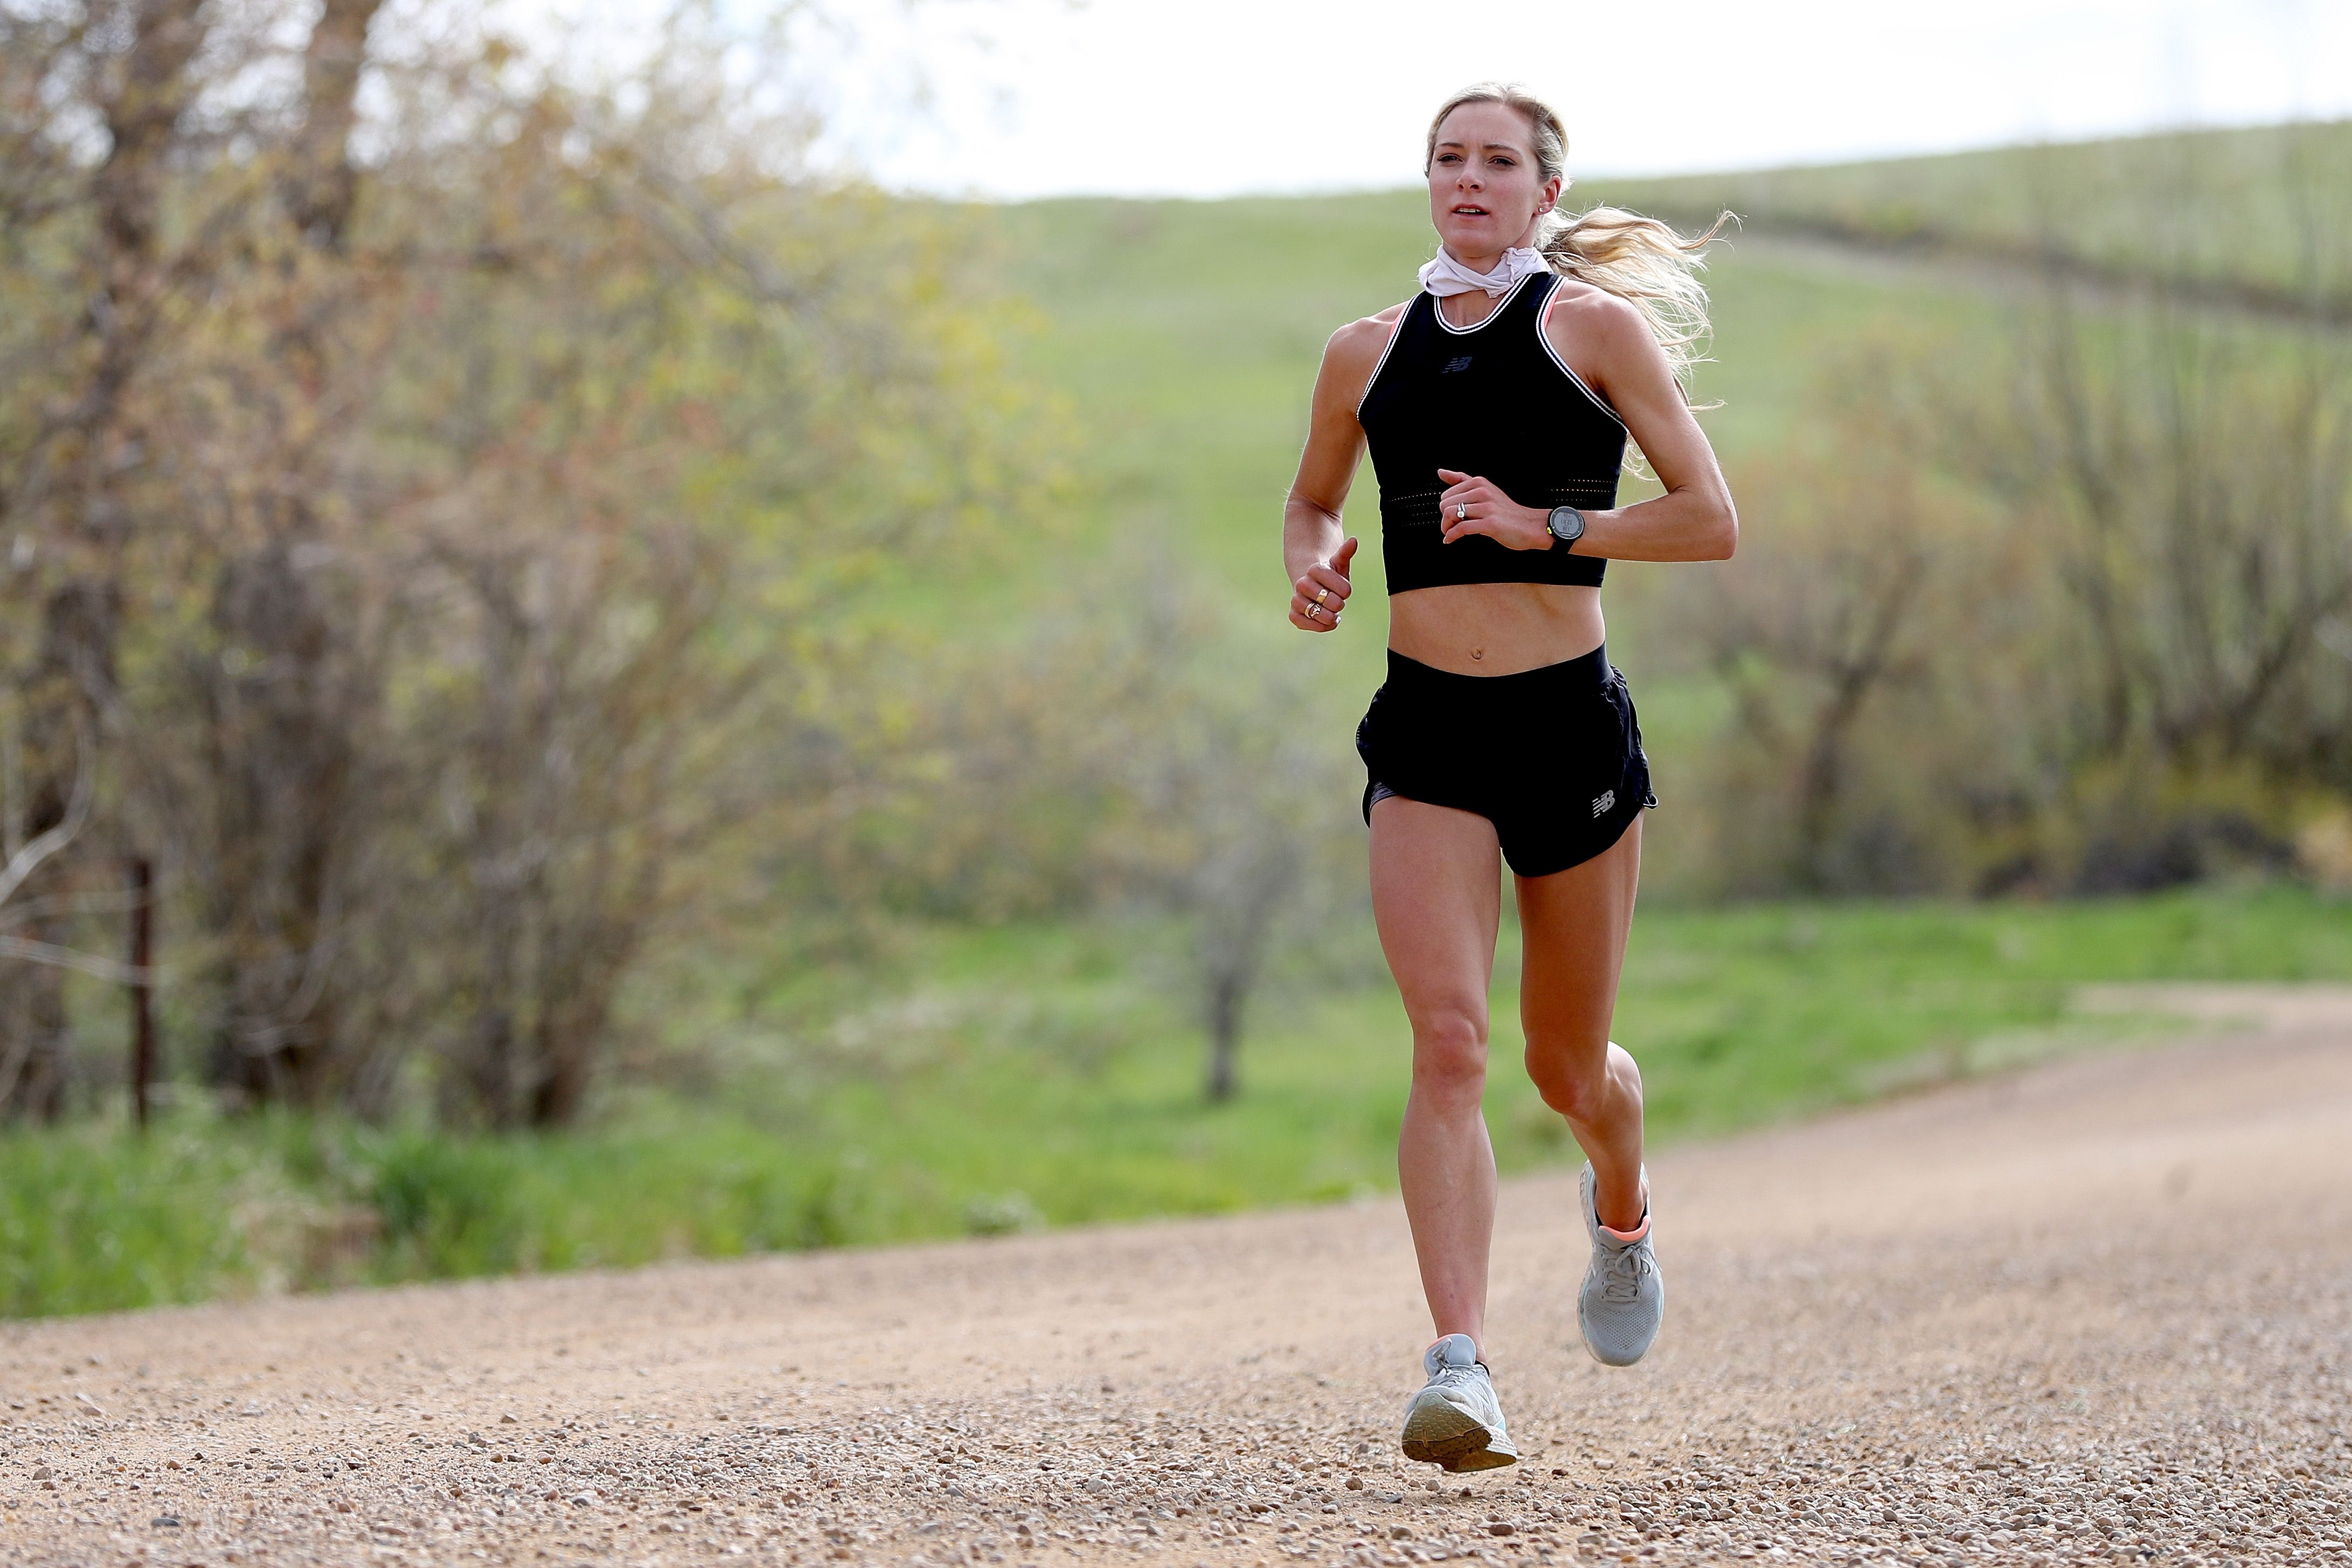 Runner | Emma Coburn's Prerun